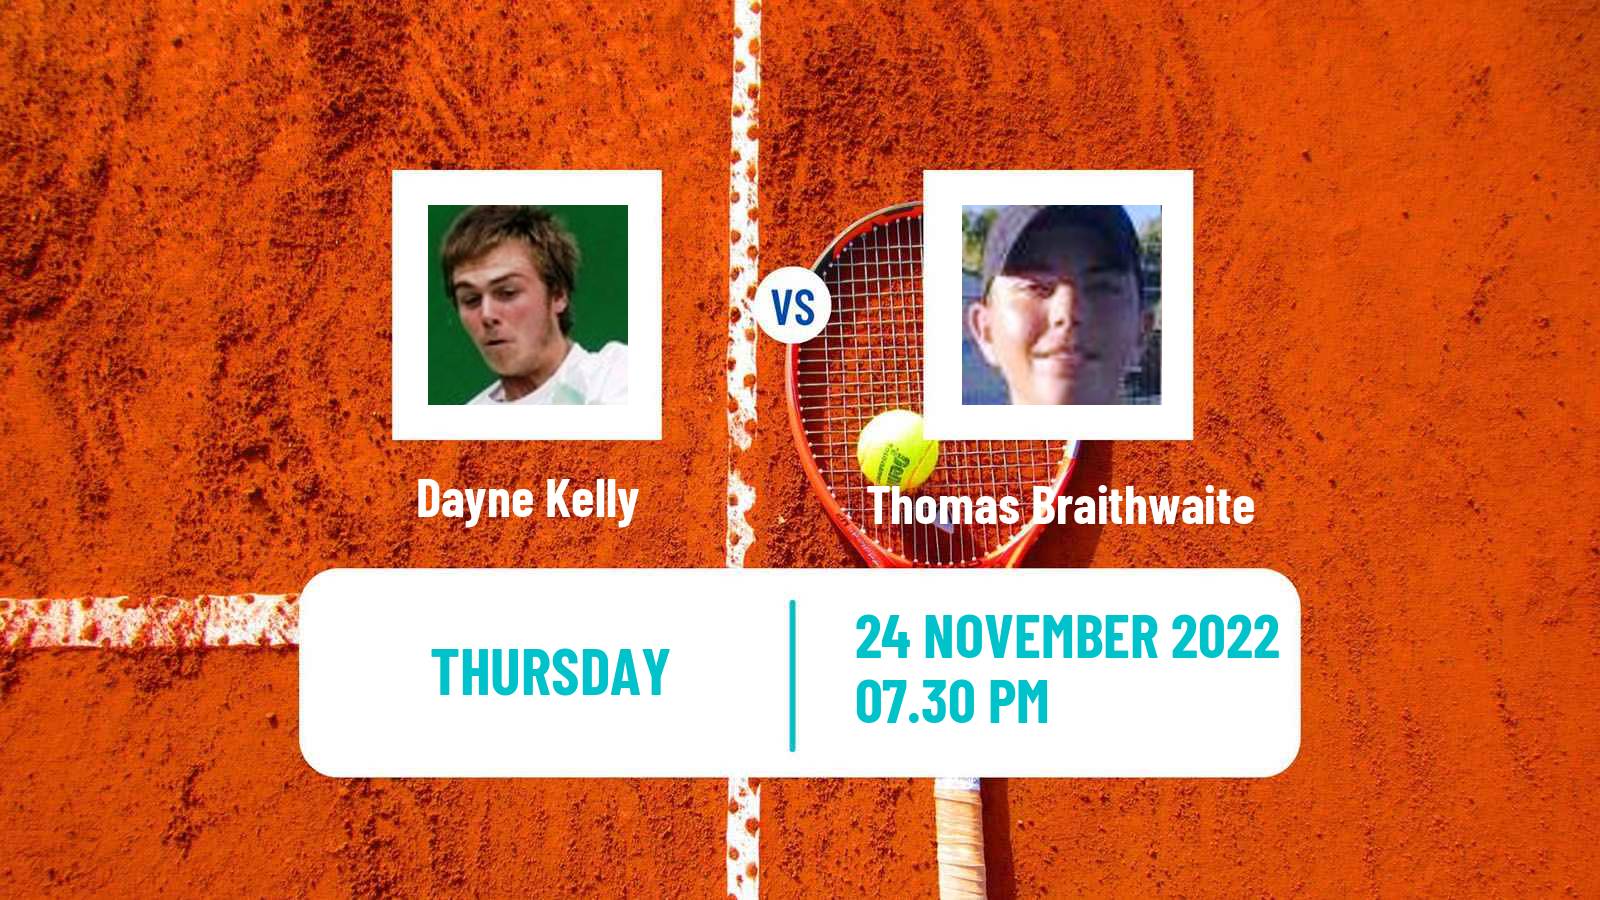 Tennis ITF Tournaments Dayne Kelly - Thomas Braithwaite